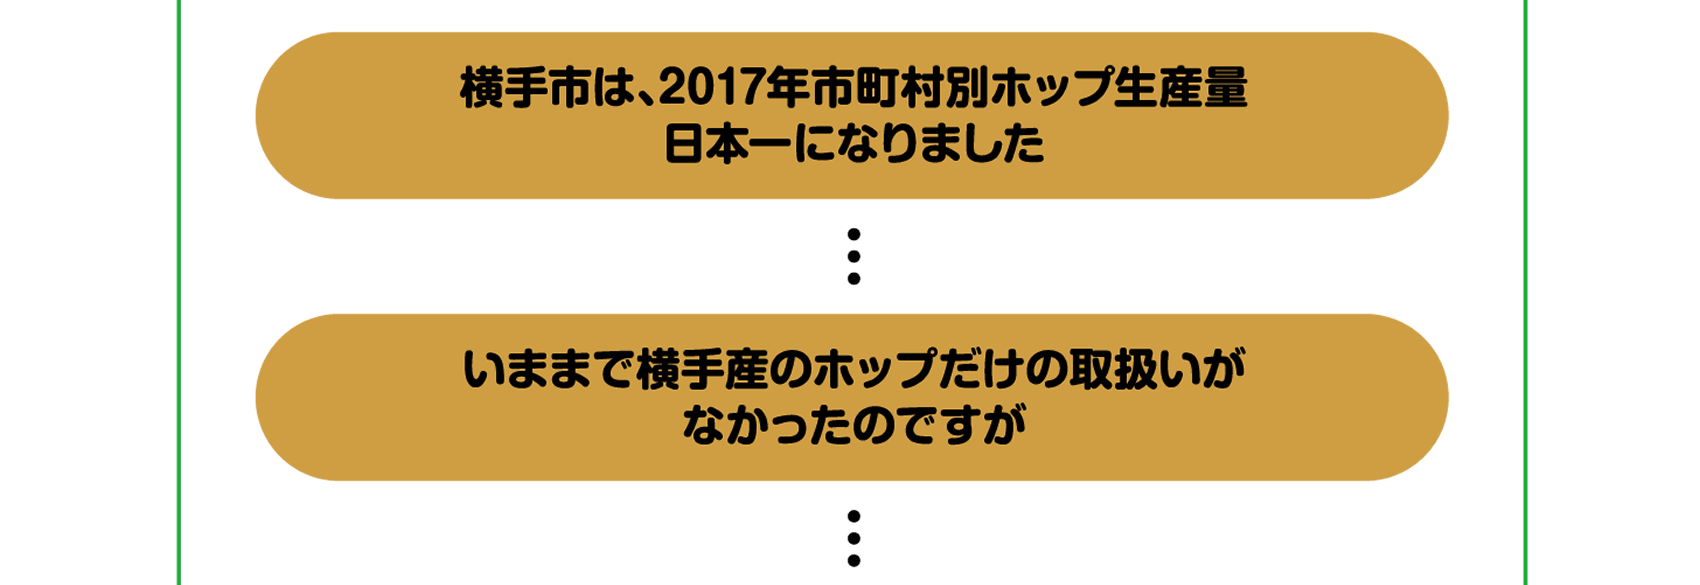 横手市は、2017年市町村別ホップ生産量日本一になりました。いままで横手産のホップだけの取扱いがなかったのですが